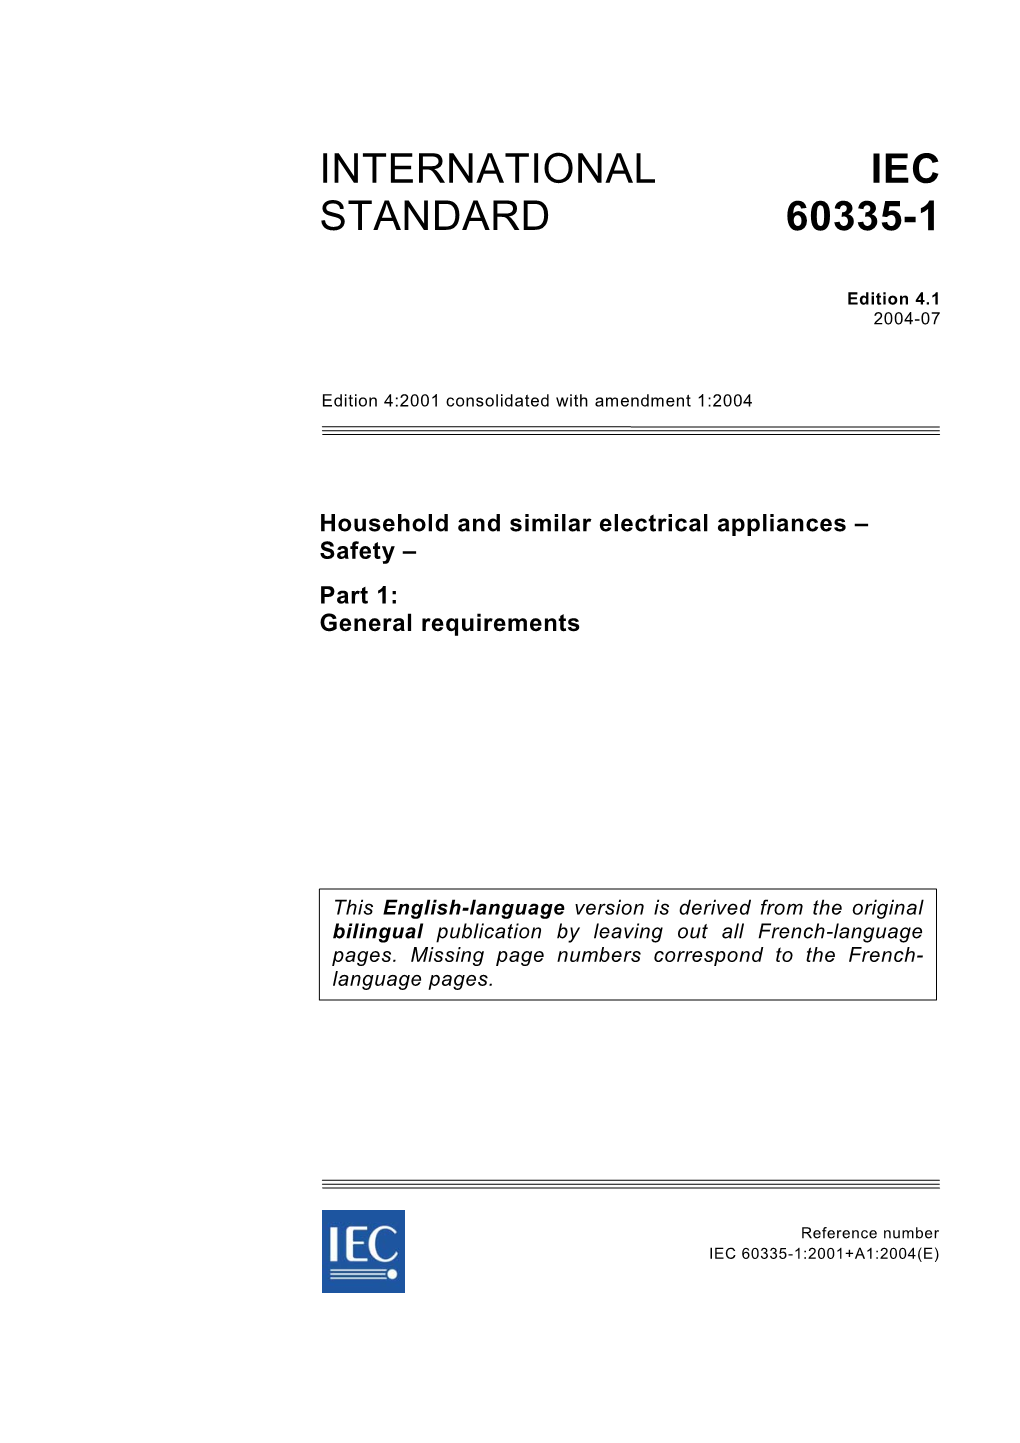 International Standard Iec 60335-1